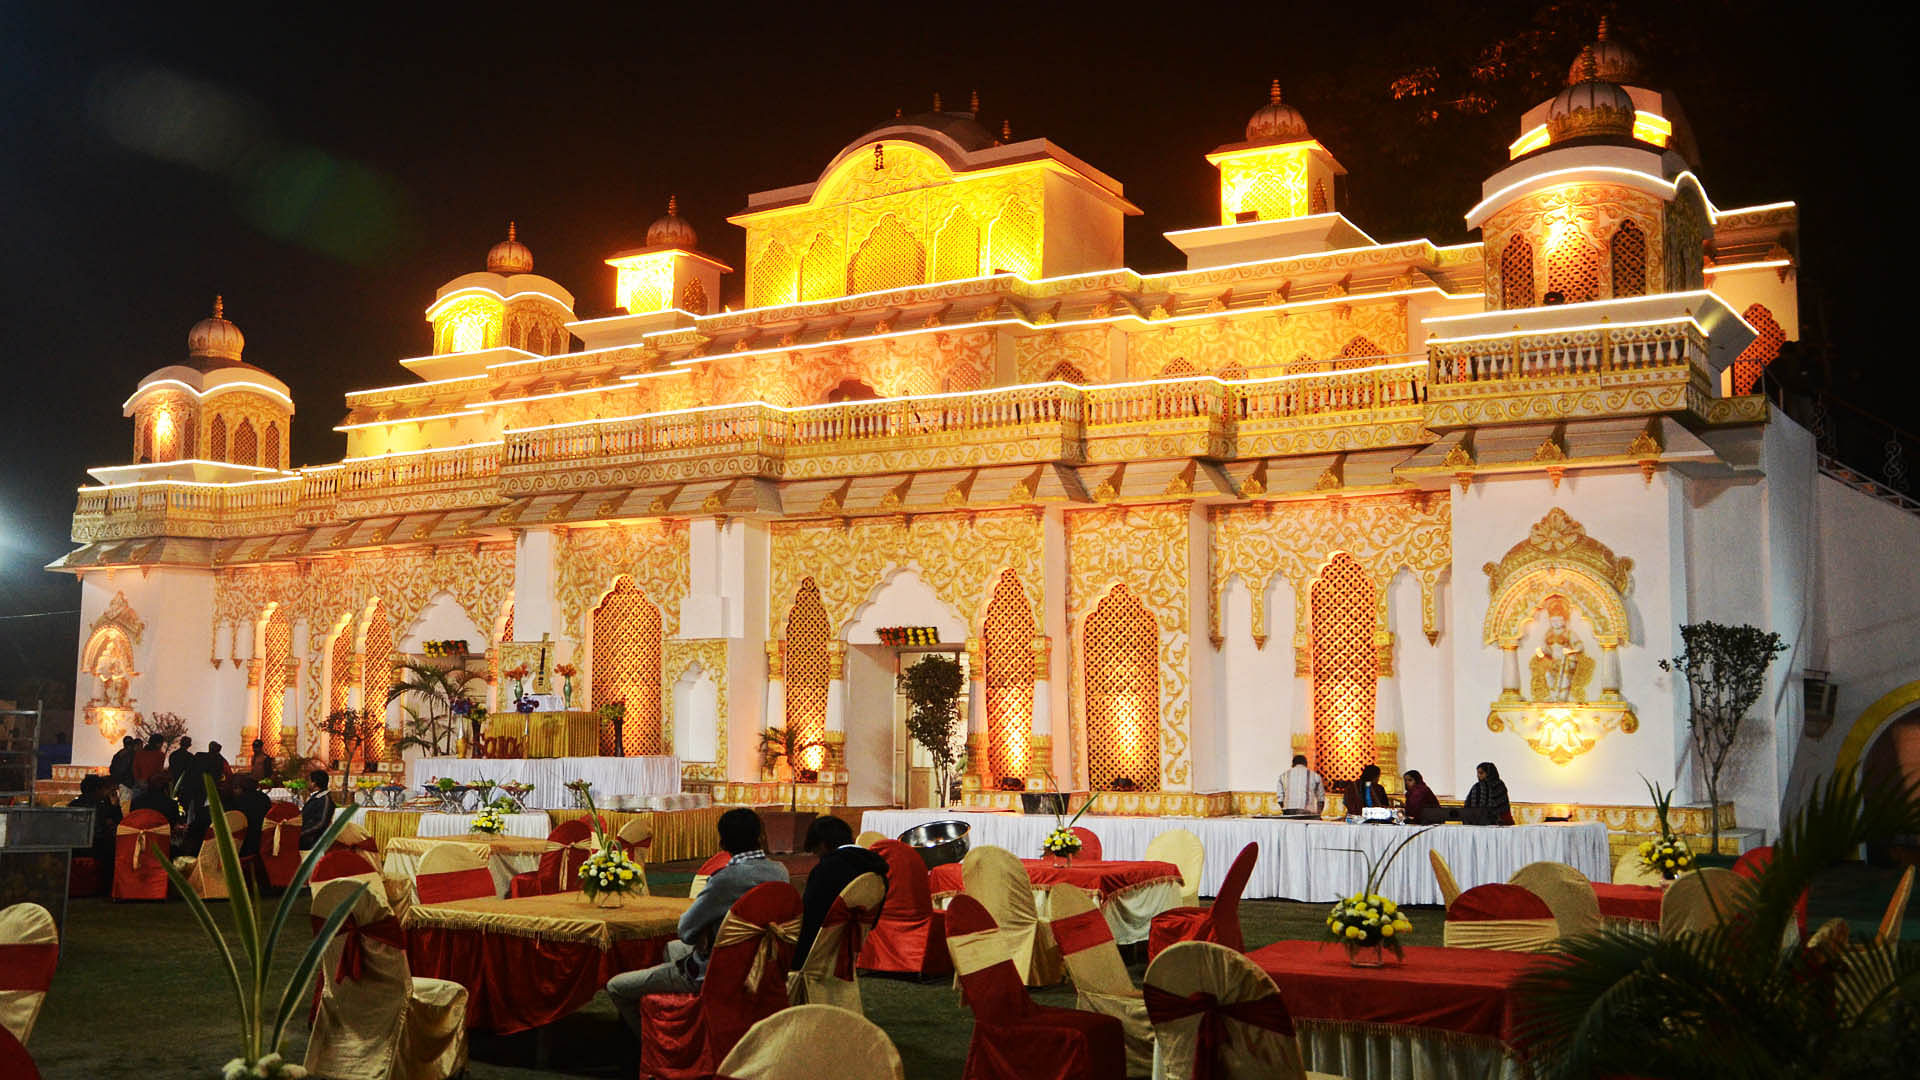 Numberdar Palace in Vasundhara, Ghaziabad